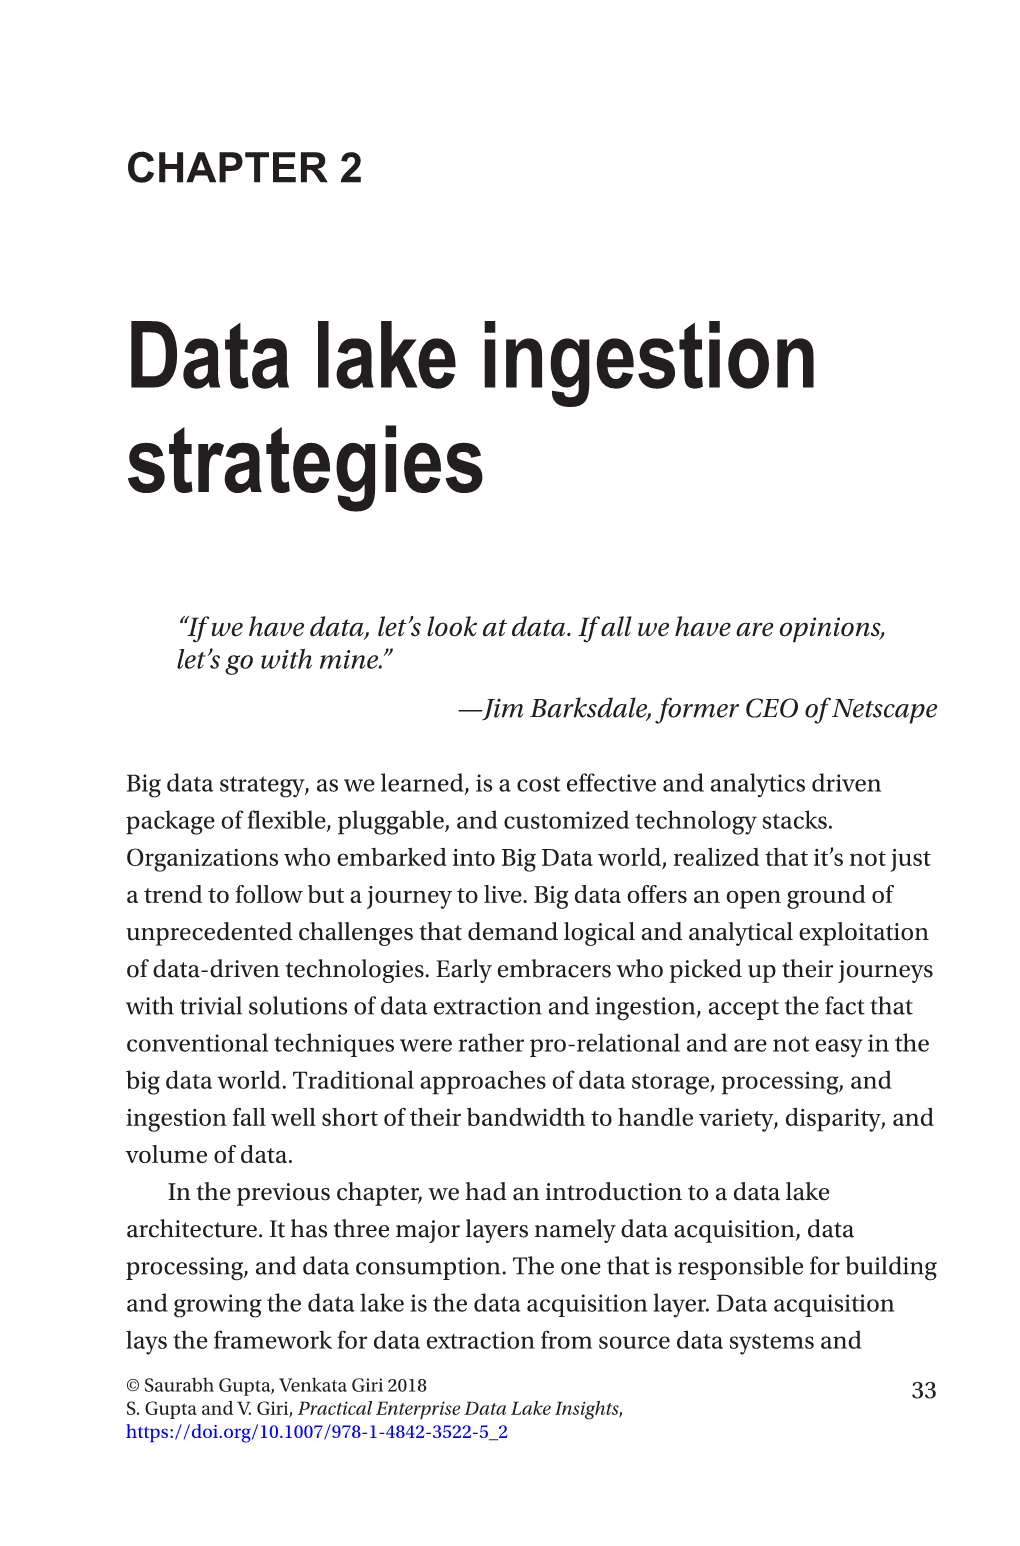 Data Lake Ingestion Strategies